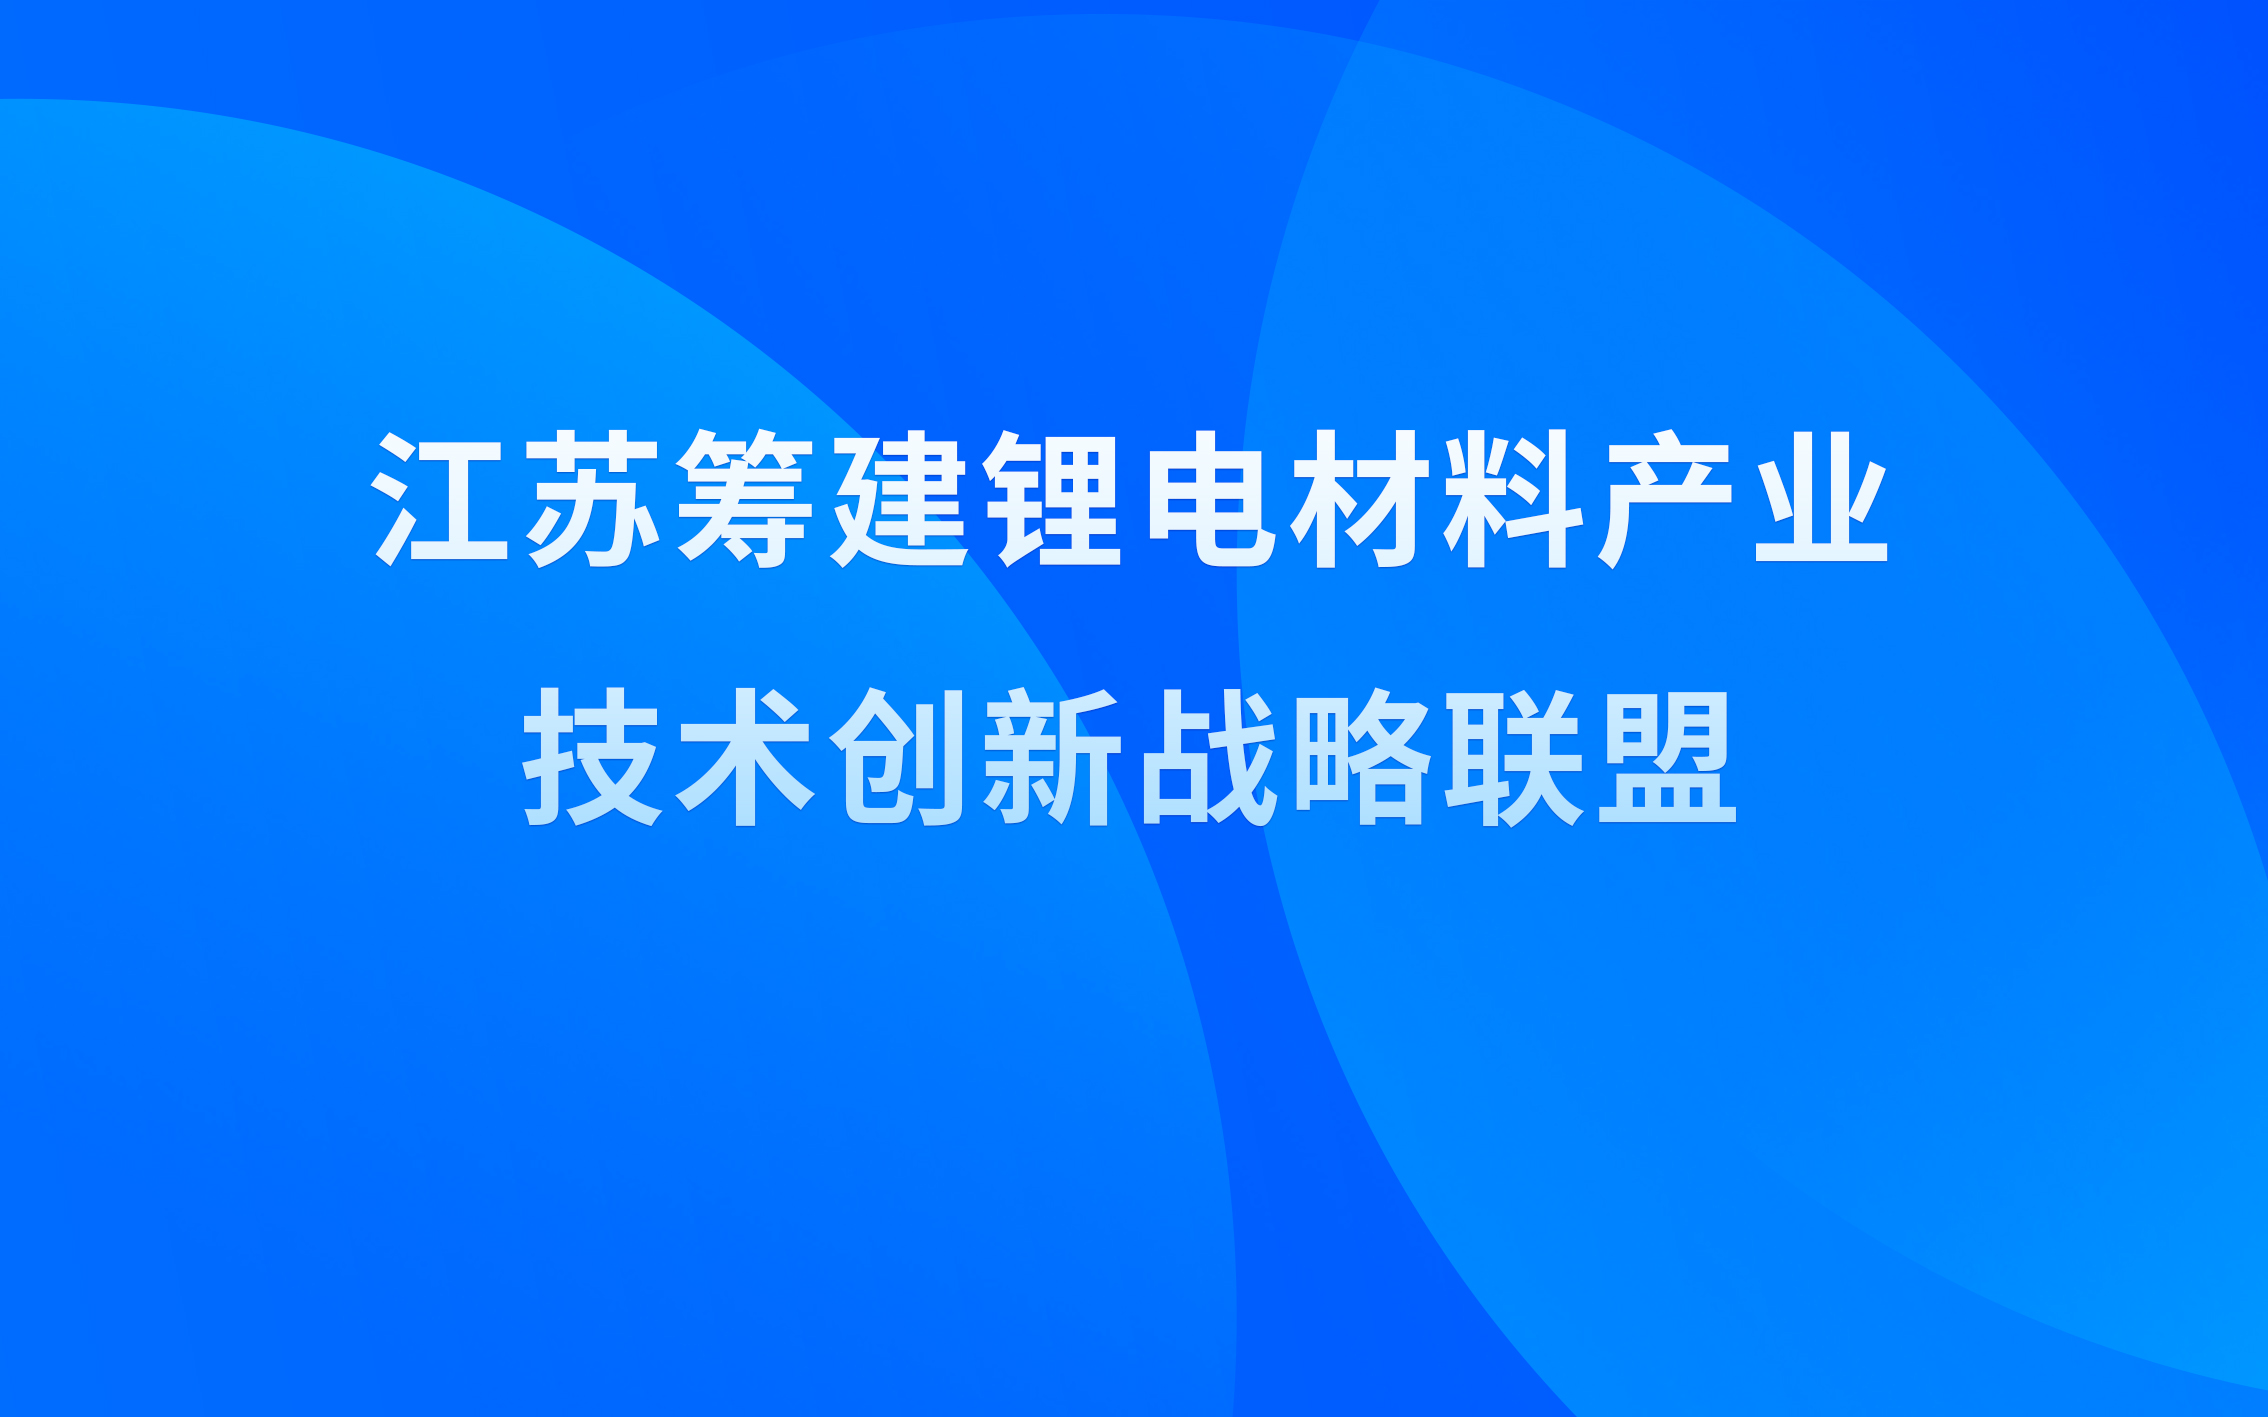 江苏筹建锂电材料产业技术j9九游会官网网站战略联盟